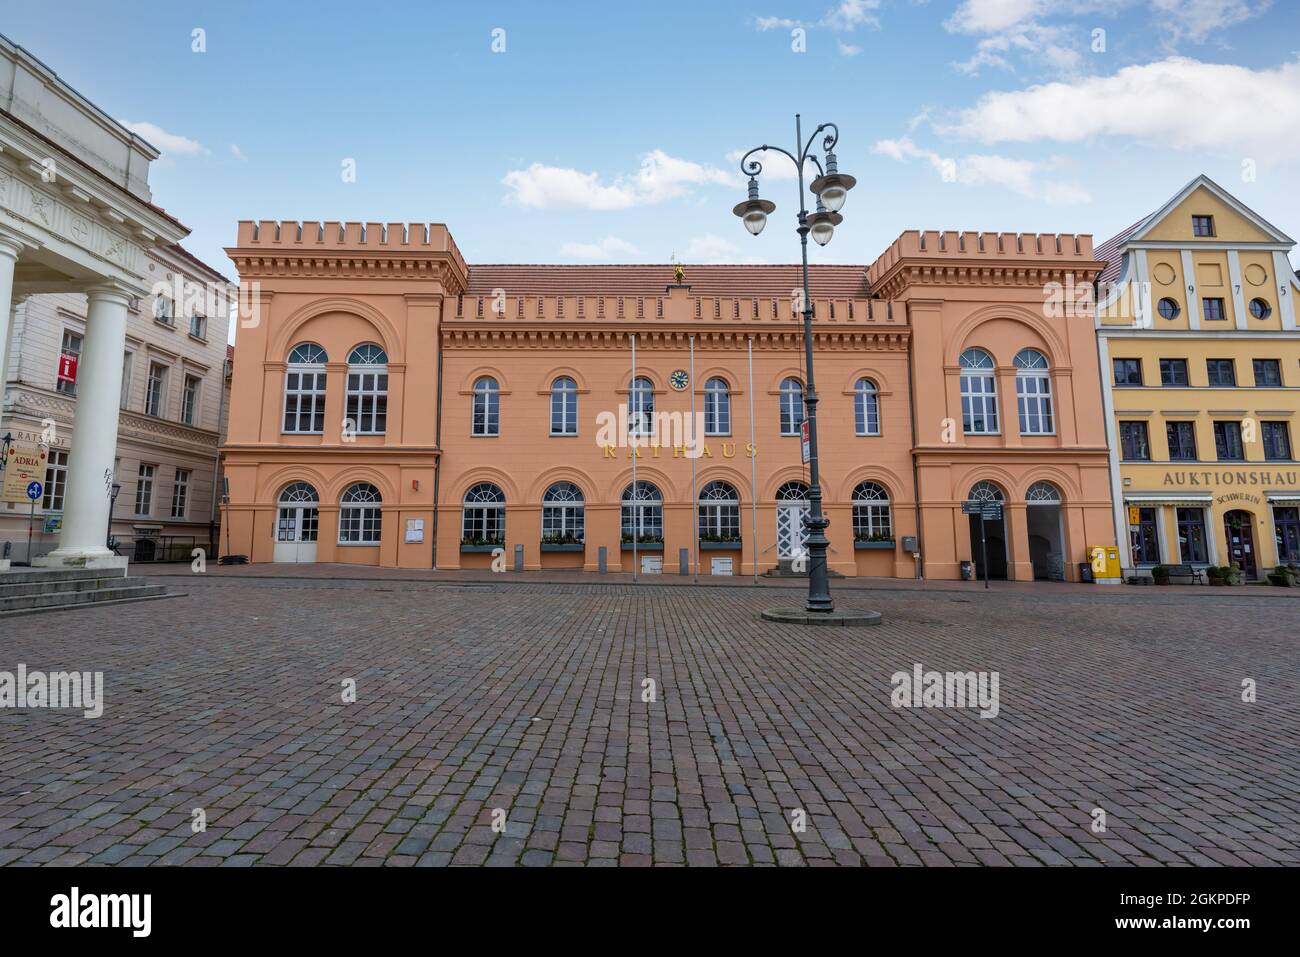 Hôtel de ville de Schwerin (Rathaus) à Marktplatz - Schwerin, Allemagne Banque D'Images